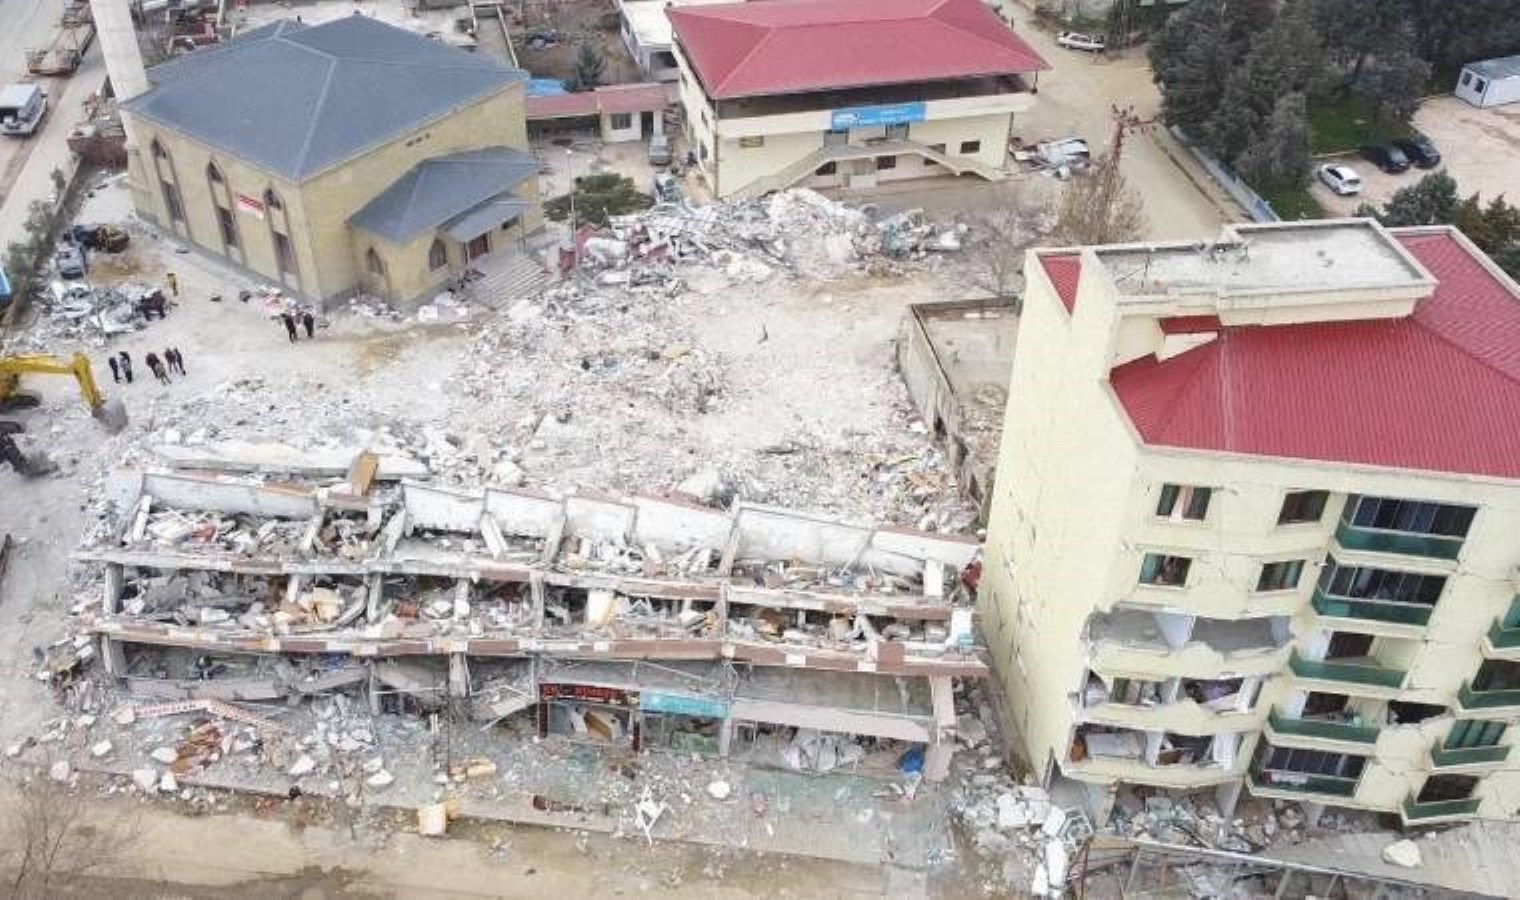 Depremde 29 kişinin öldüğü binanın şantiye şefi: Benim için kaba inşaat stajı gibiydi